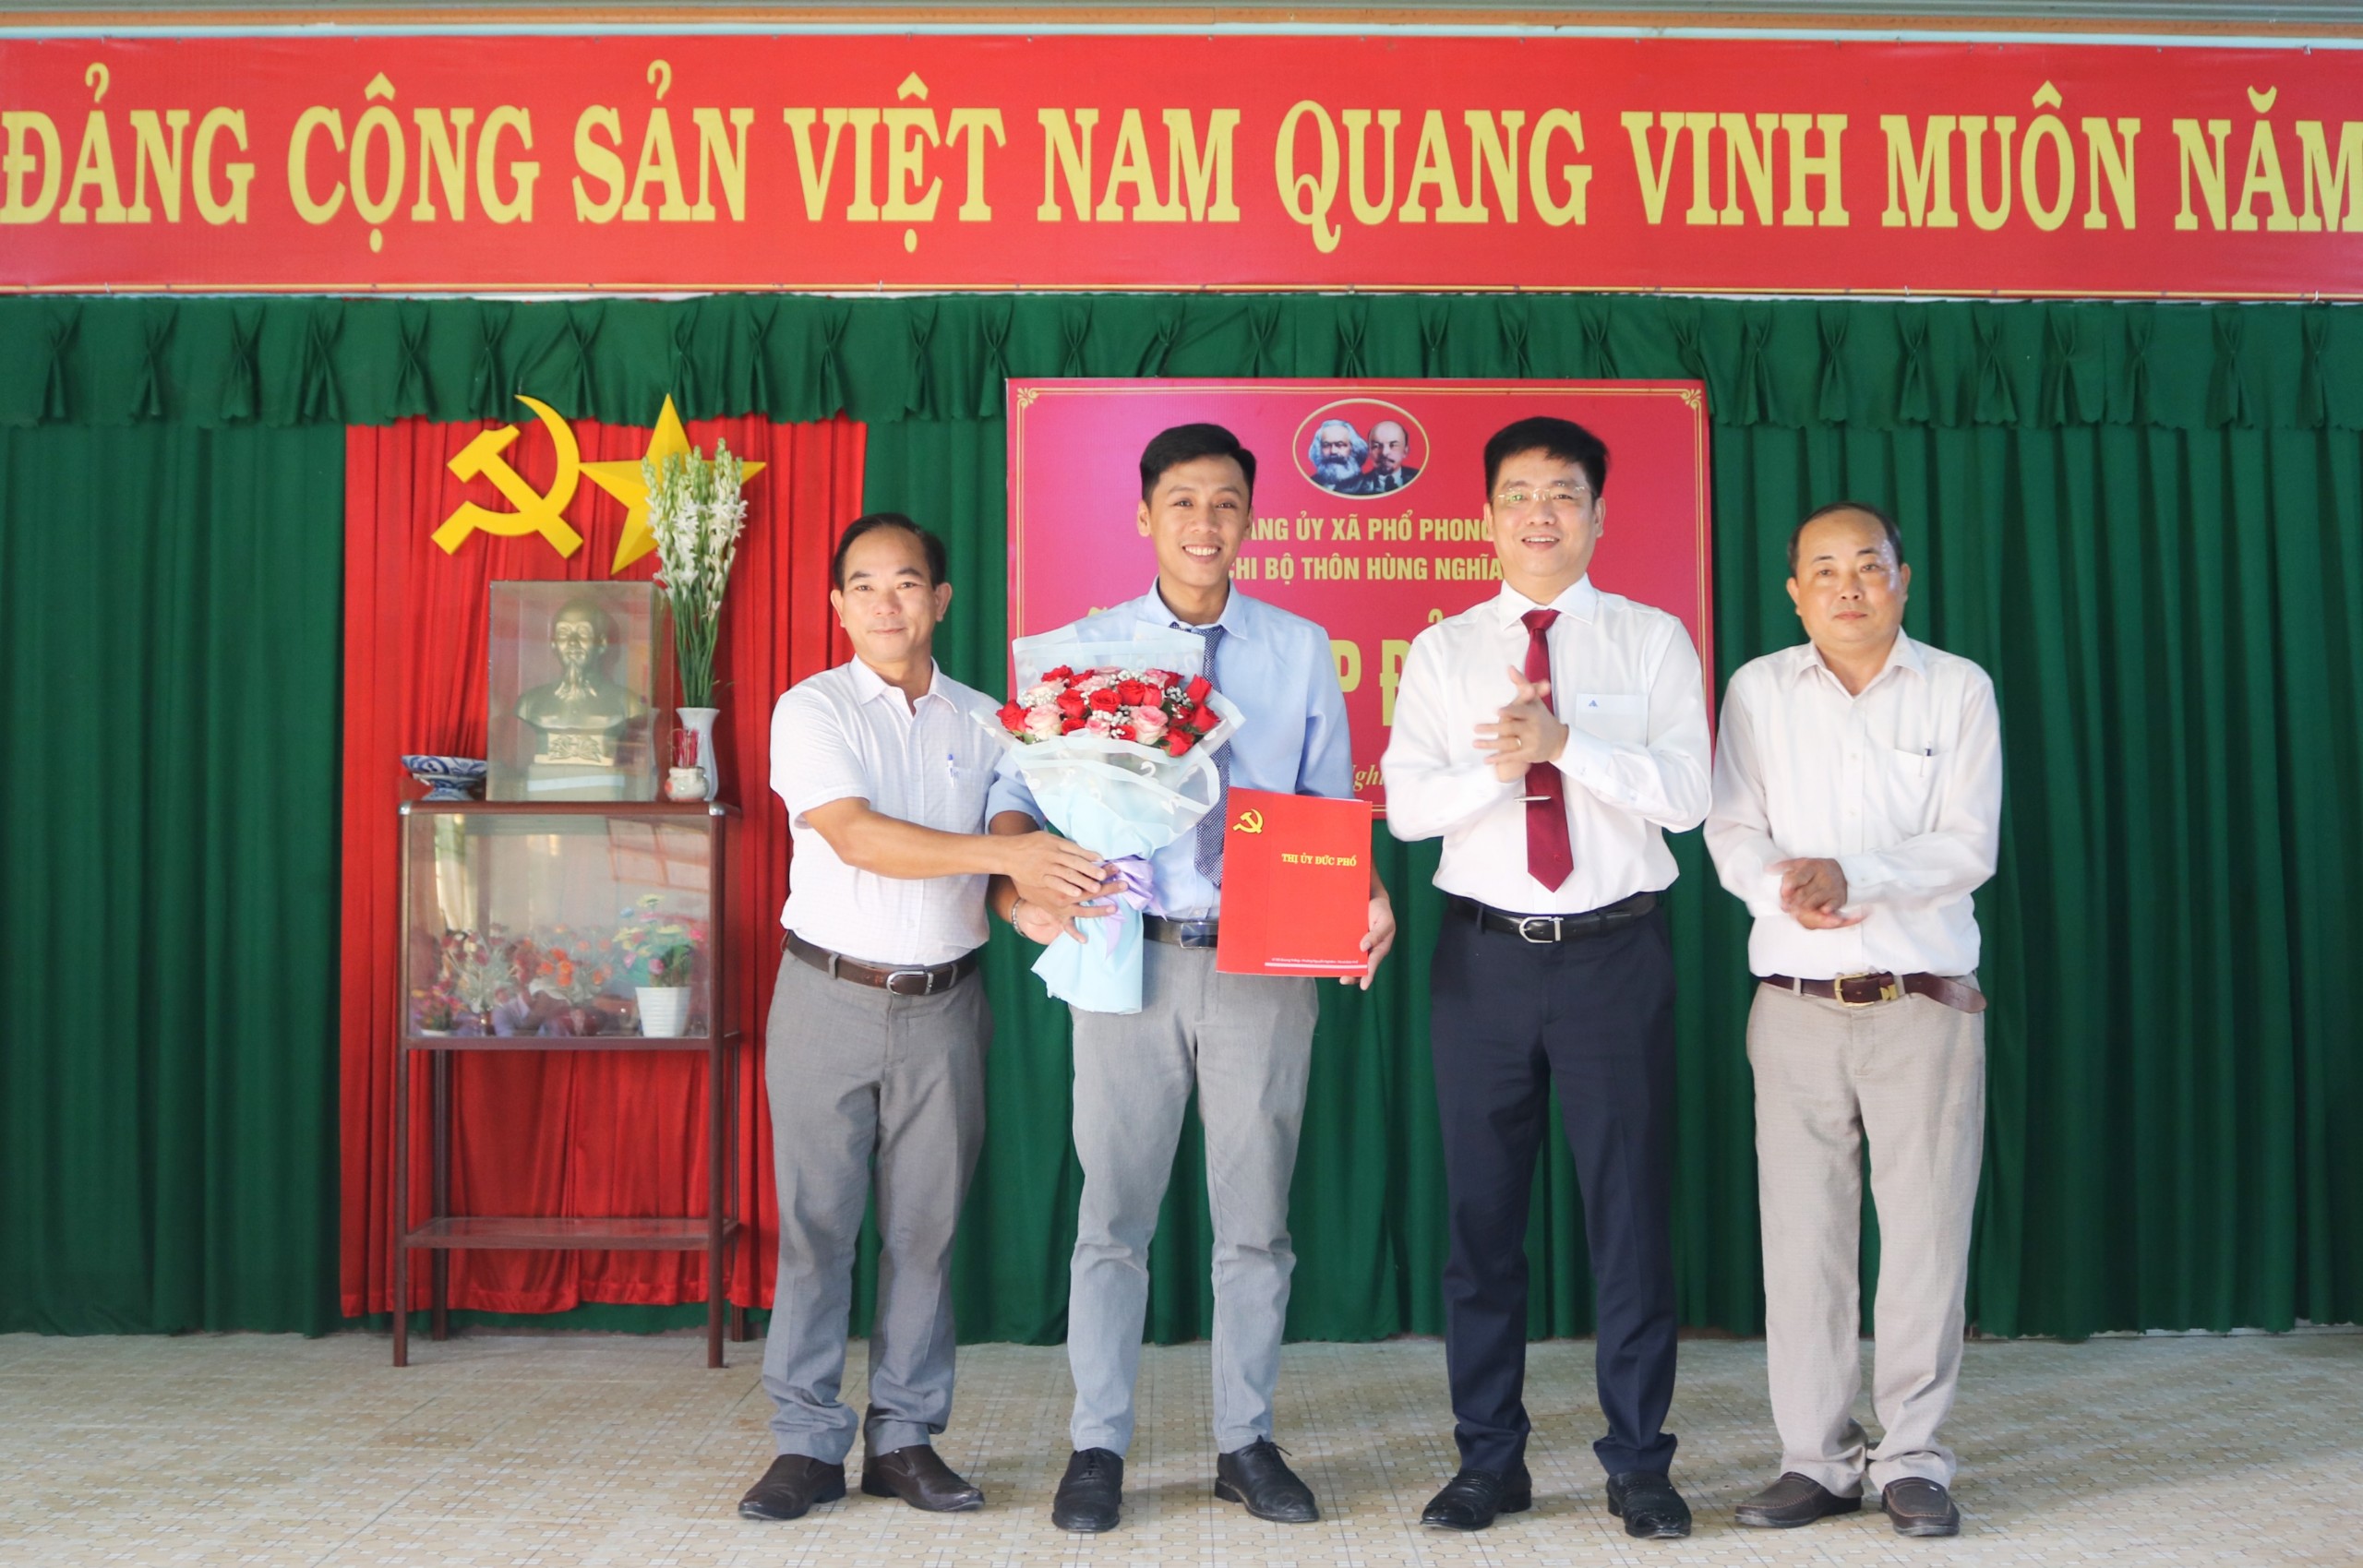 Chi bộ thôn Hùng Nghĩa kết nạp đảng viên mới là chủ doanh nghiệp